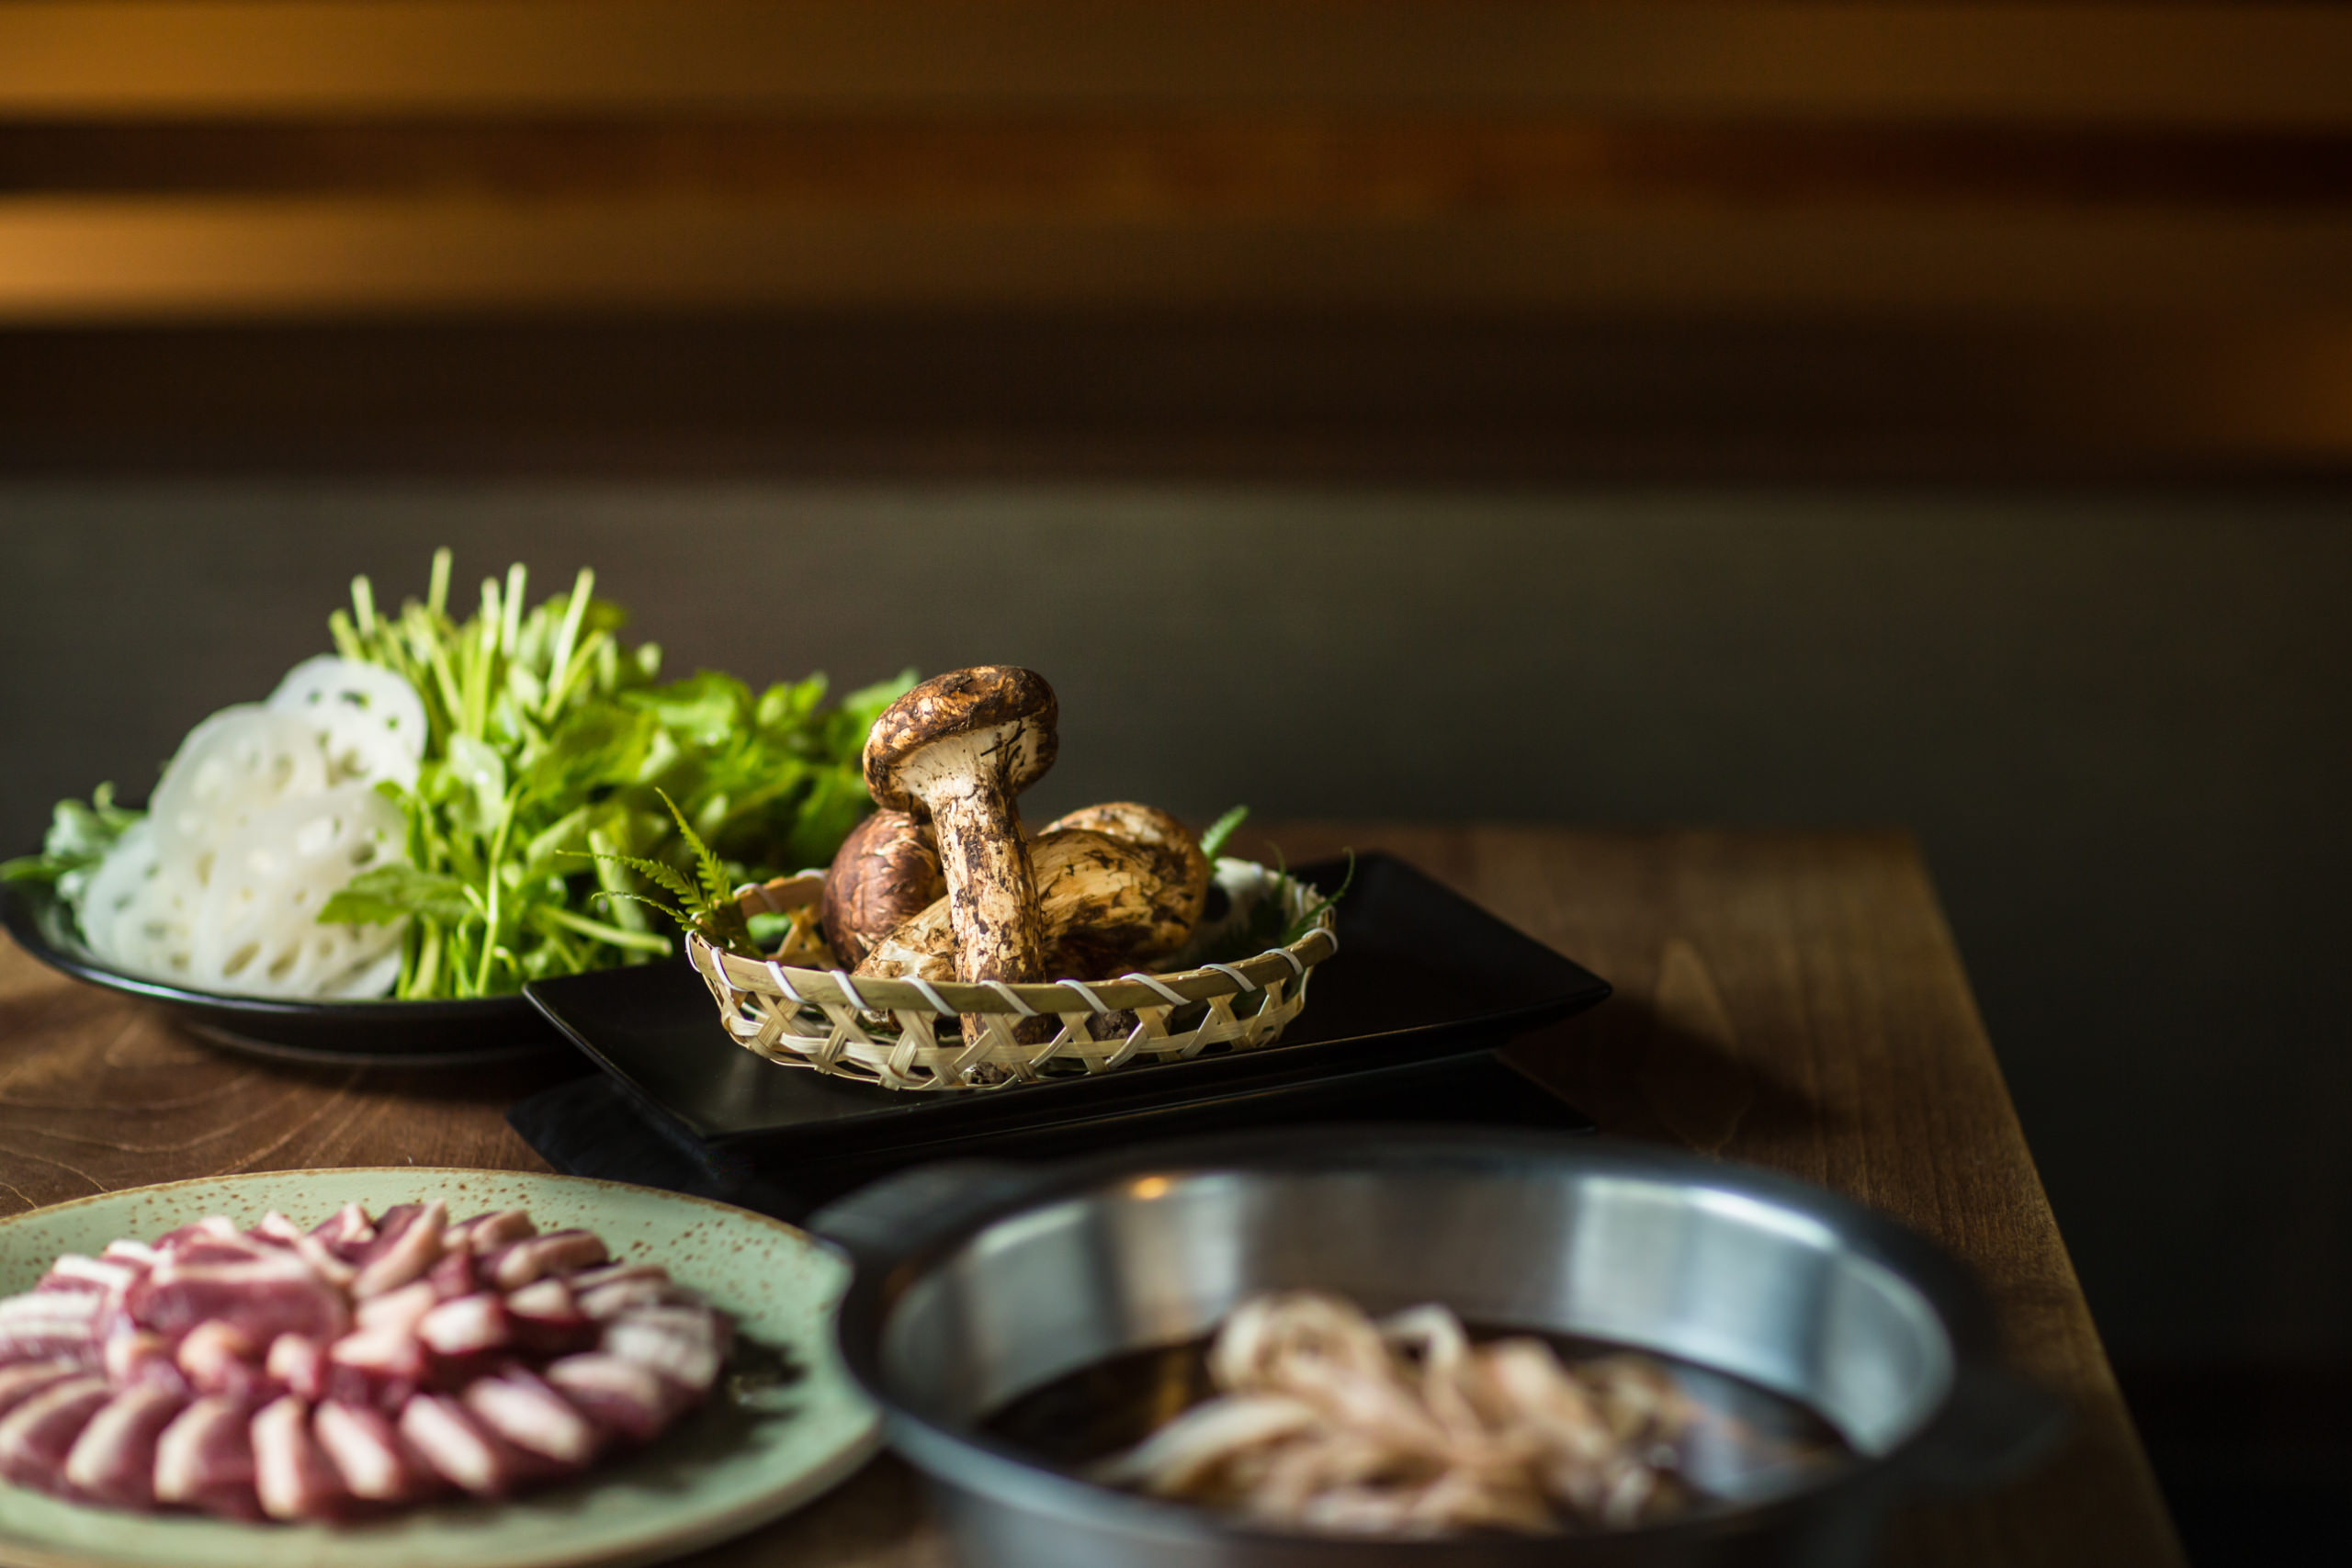 「秋薫る。河内鴨の松茸鍋。」
大阪市・河内鴨料理専門店「藤乃」公式通販サイトにて
河内鴨の松茸鍋を販売スタート